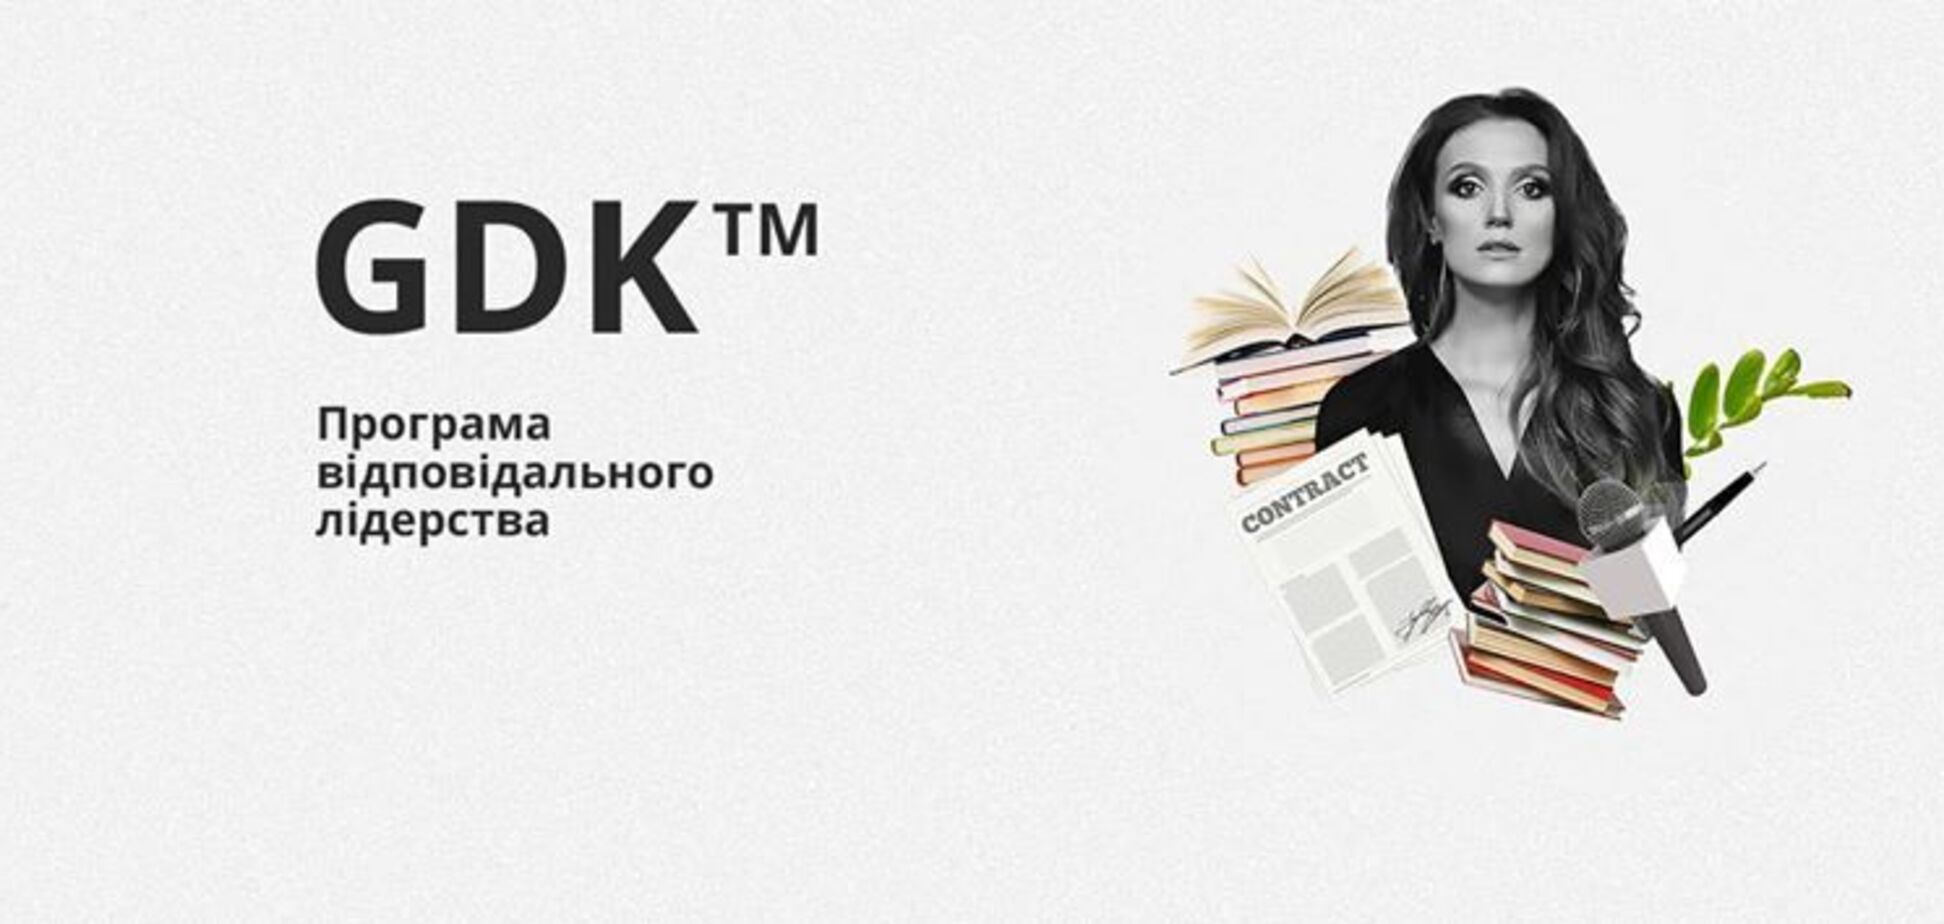 GDK: українка розробила унікальну лідерську програму, що підкорює світ